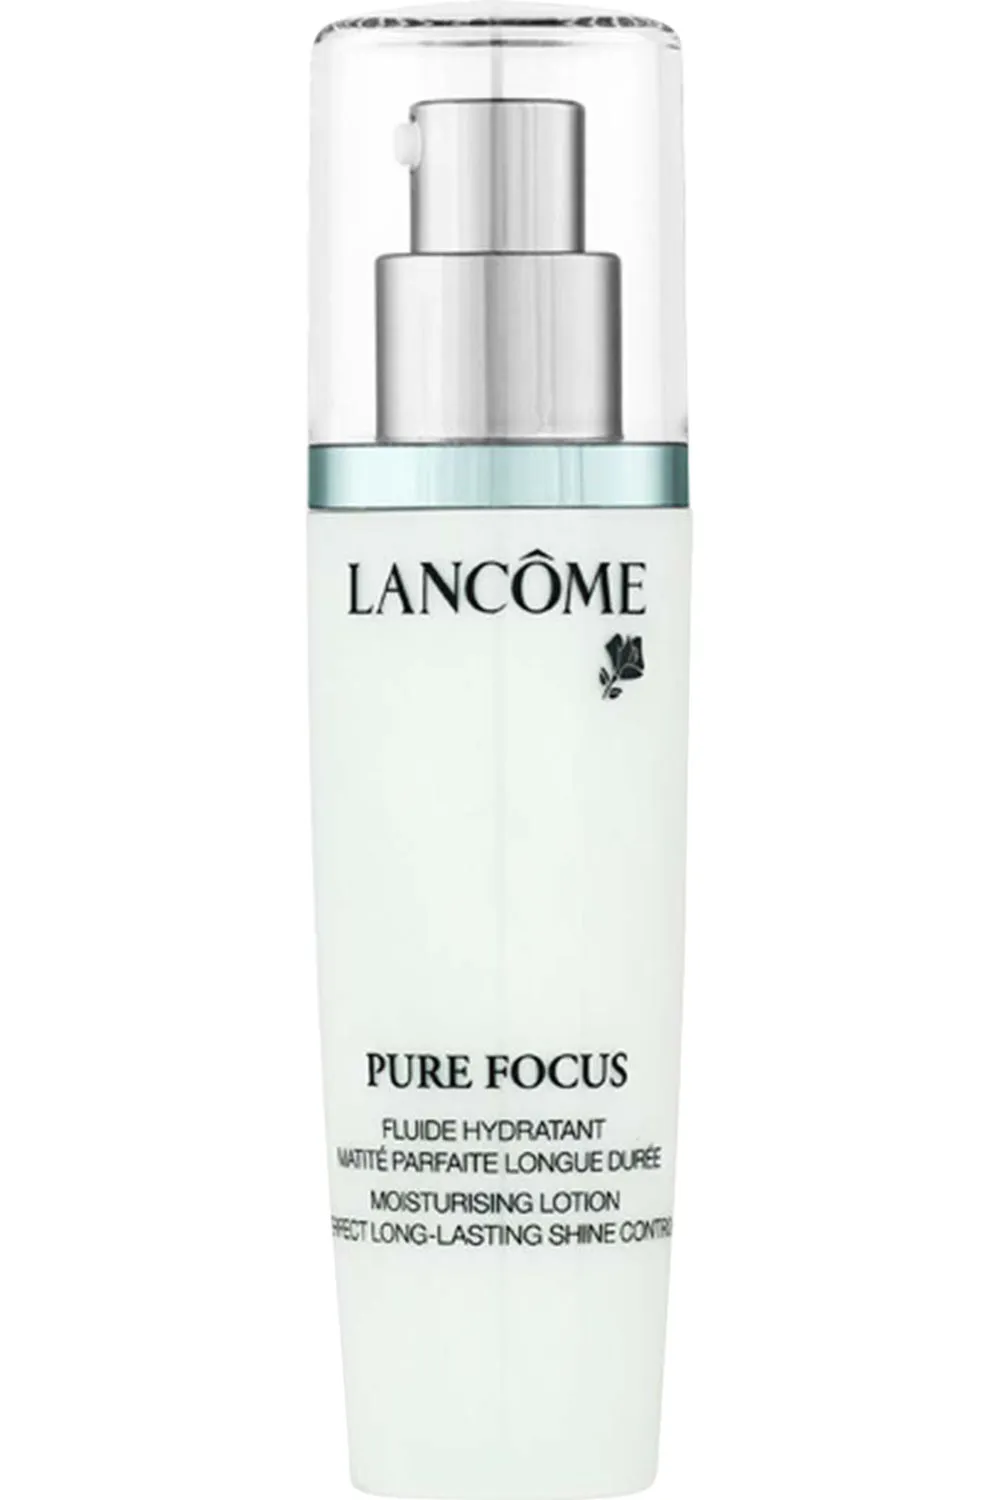 Fluide hydratant pour peau grasse — Pure Focus Fluid de chez Lancôme